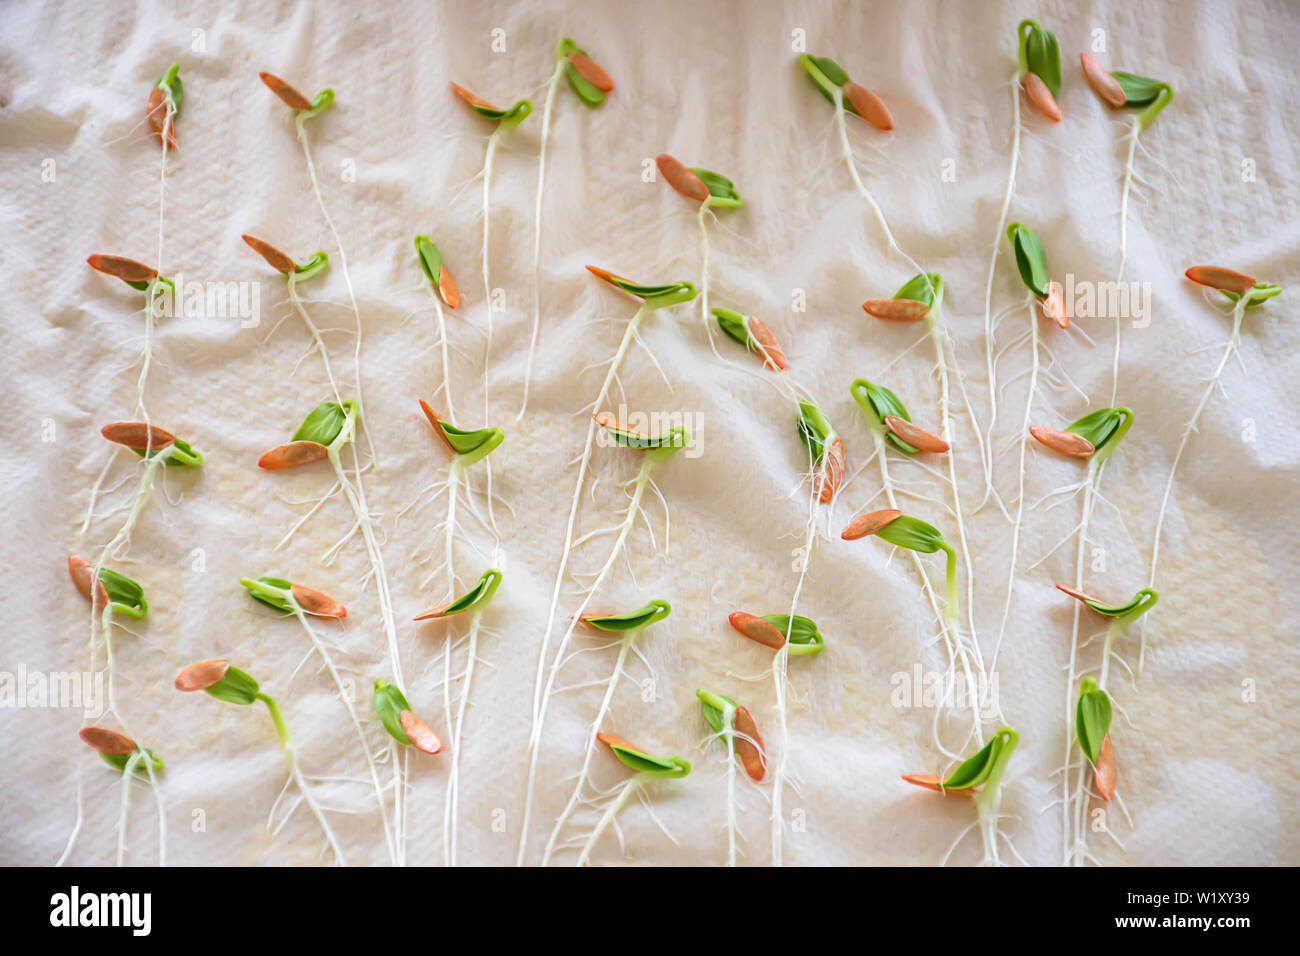 Piantine di melone invernale che cresce dal seme su carta. Foto Stock